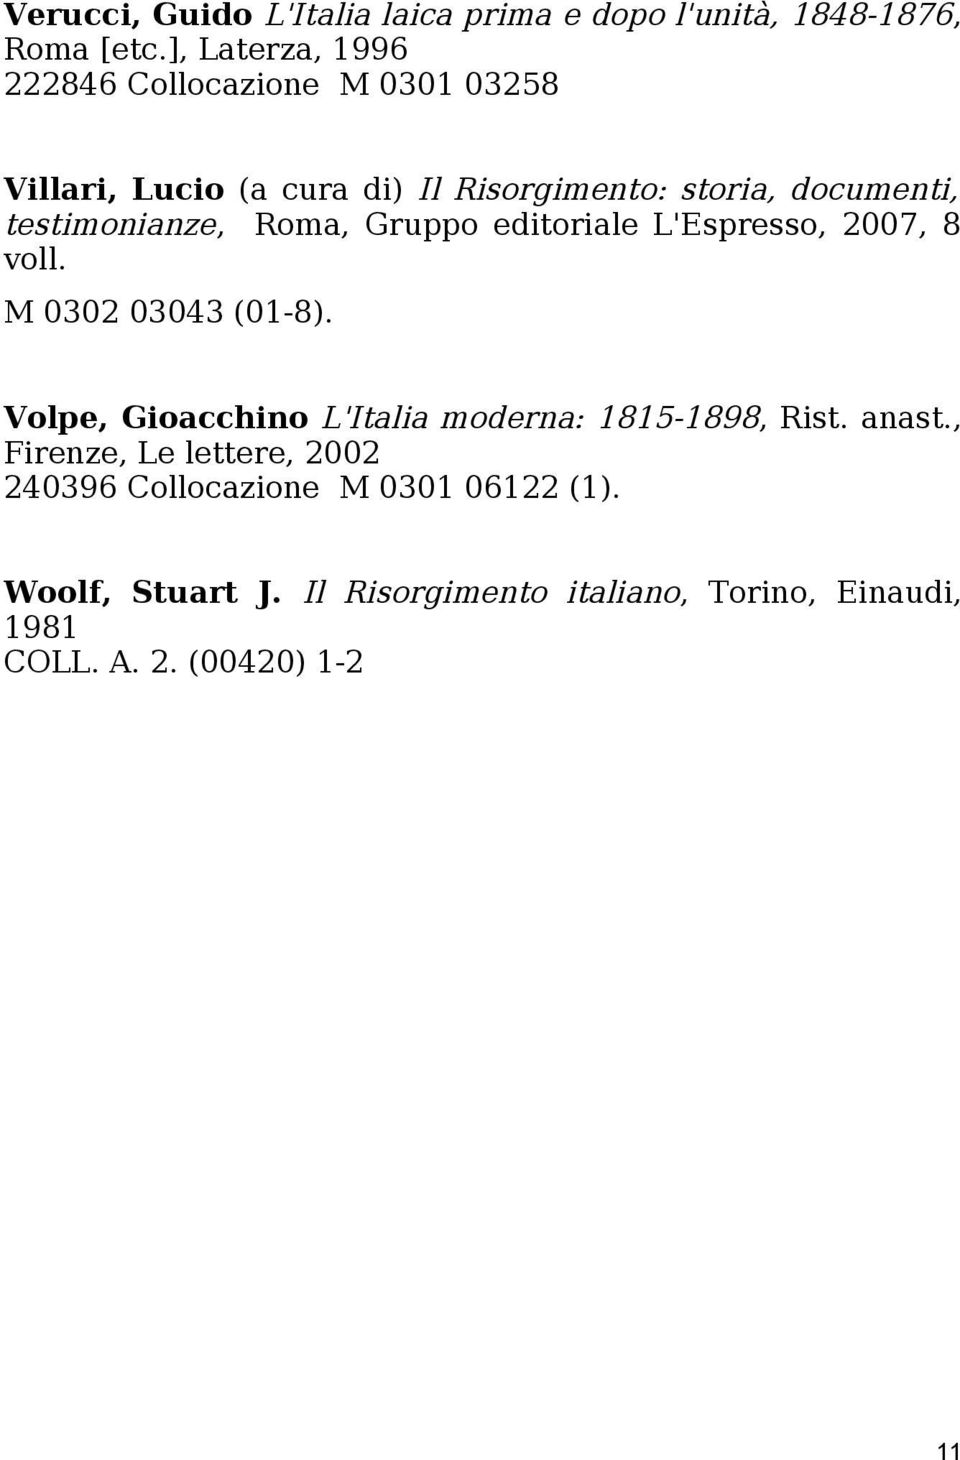 testimonianze, Roma, Gruppo editoriale L'Espresso, 2007, 8 voll. M 0302 03043 (01-8).